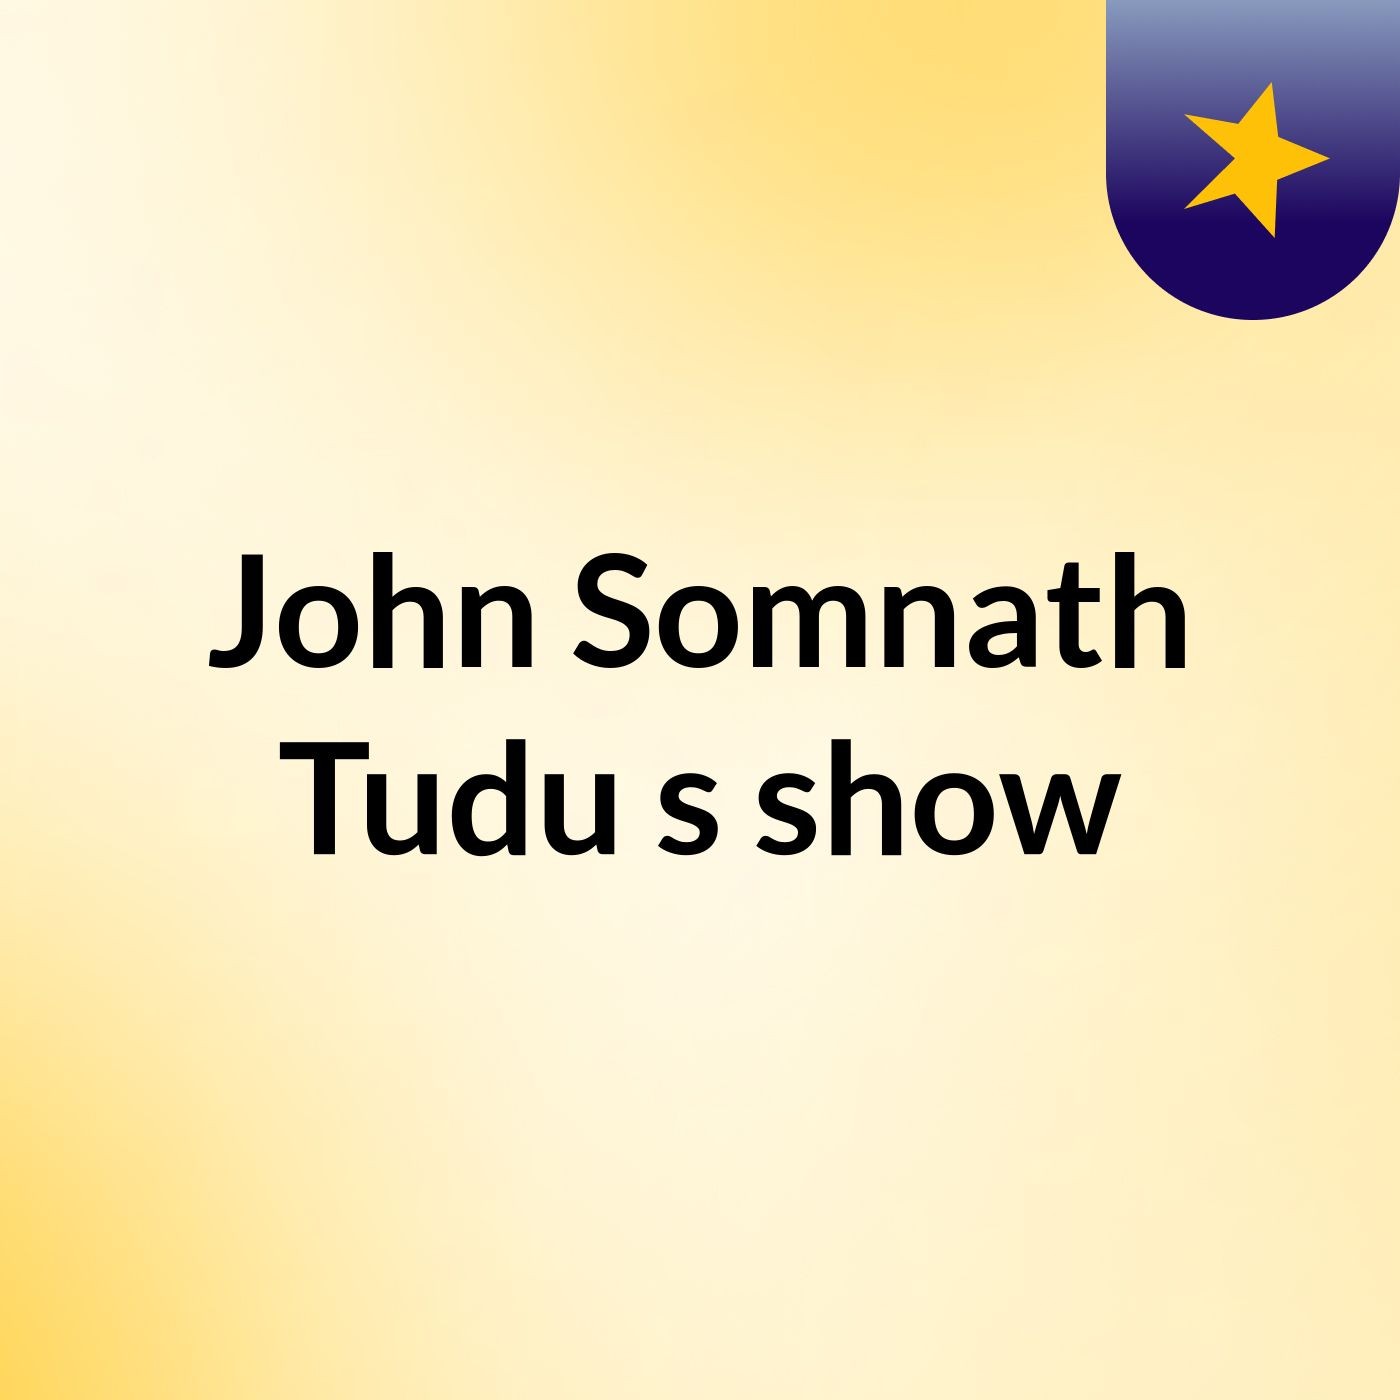 John Somnath Tudu's show